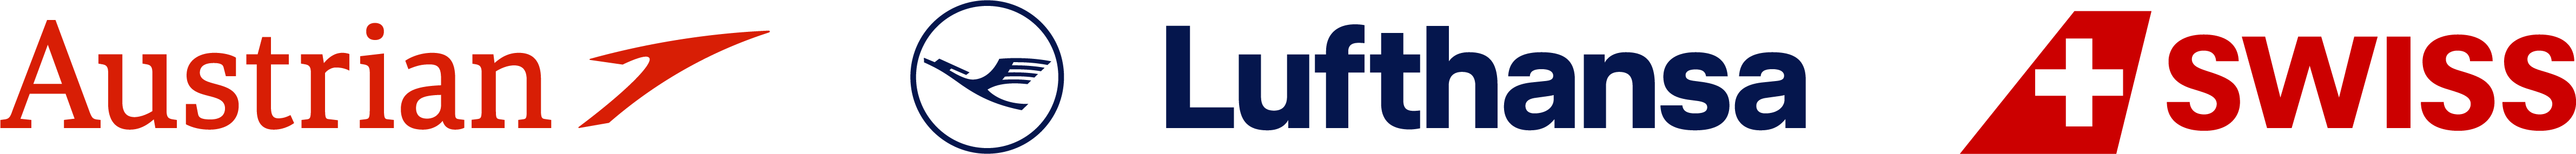 Lufthansa_Group_logo.png